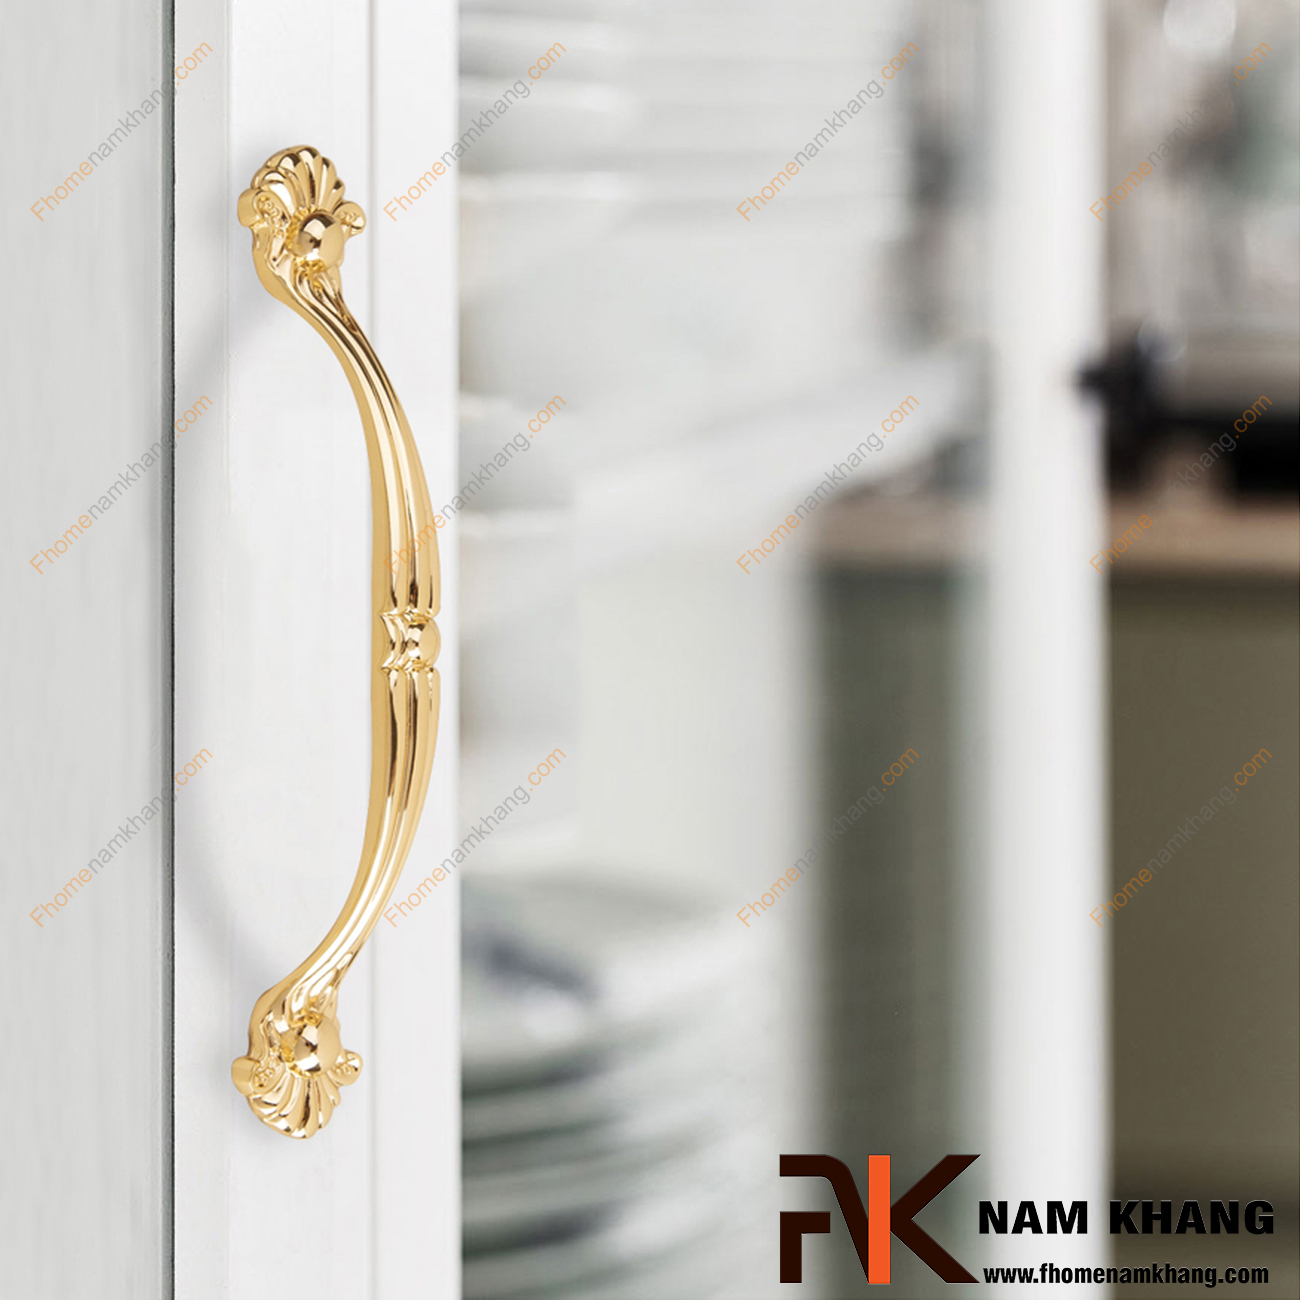 Tay nắm cửa tủ màu vàng NK149-LV được thiết kế với phong cách cổ điển sang trọng với họa tiết đơn giản nhưng được gia công với độ cong mượt cao tạo cảm giác thoải mái và chắc chắn khi cầm nắm.